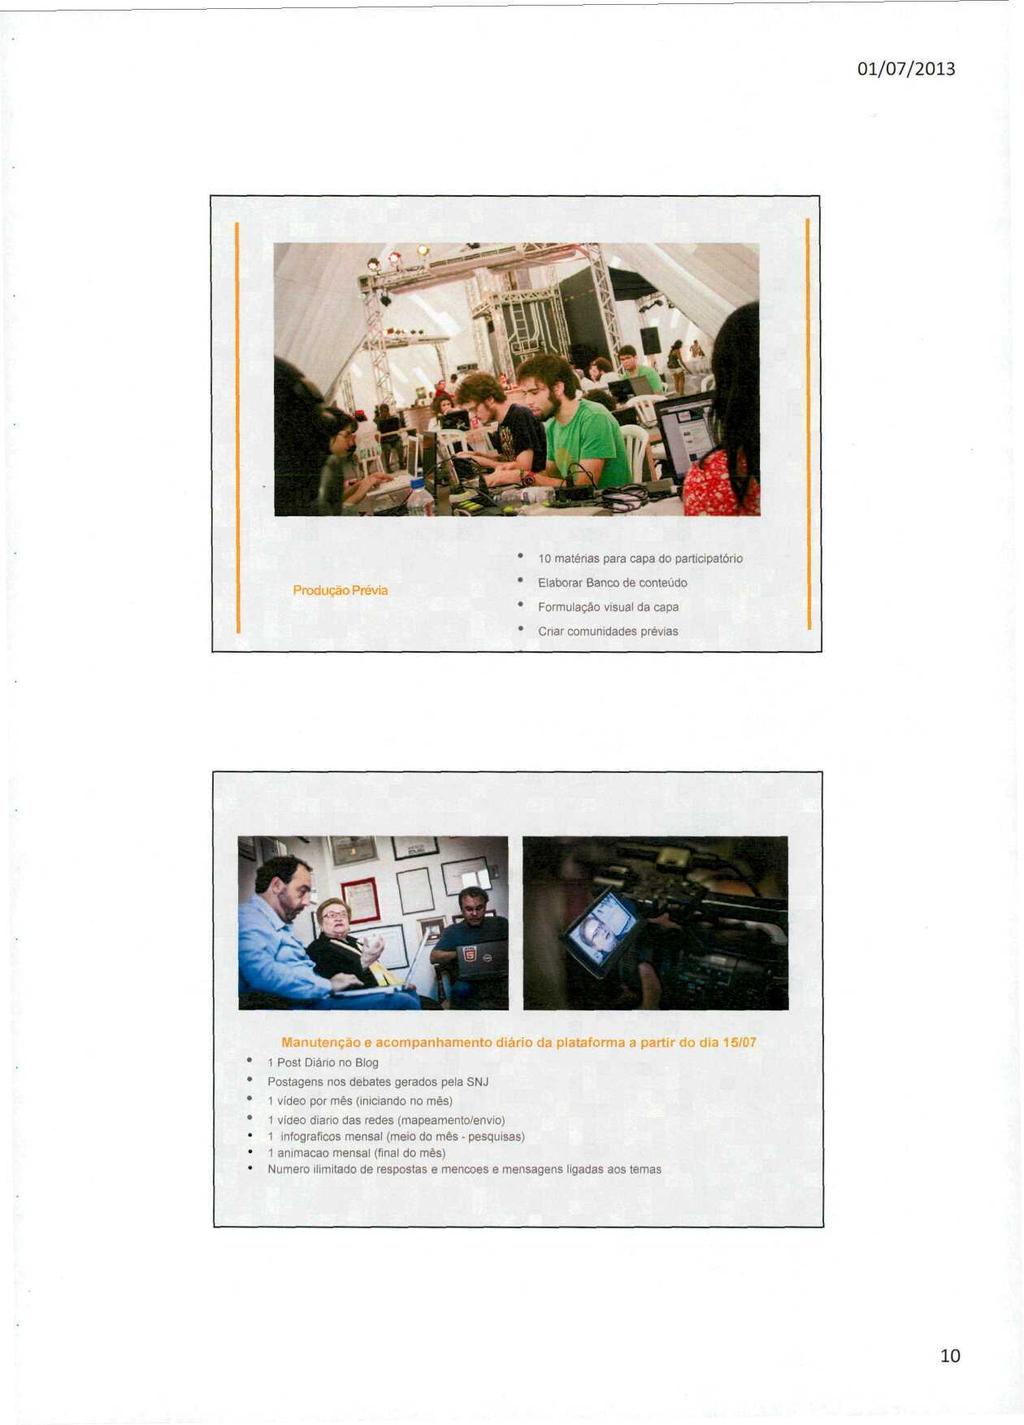 10 matérias para capa do participatório Produção Prévia Elaborar Banco de conteúdo Formulação visual da capa Criar comunidades prévias Manutenção e acompanhamento diário da plataforma a partir do dia